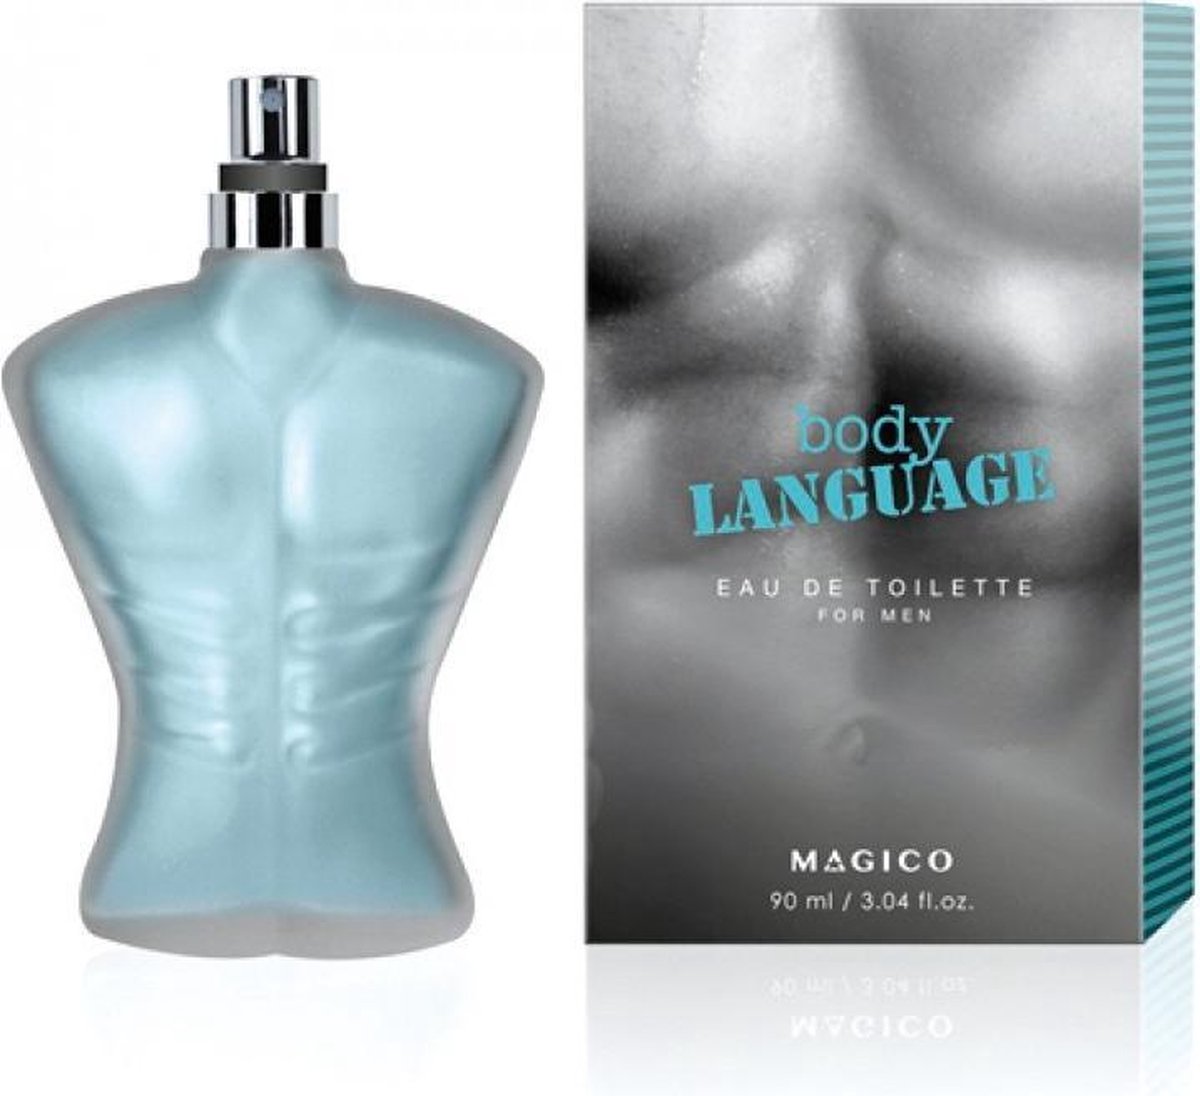 Magico Body Language for men - 90ml - Eau de Toilette